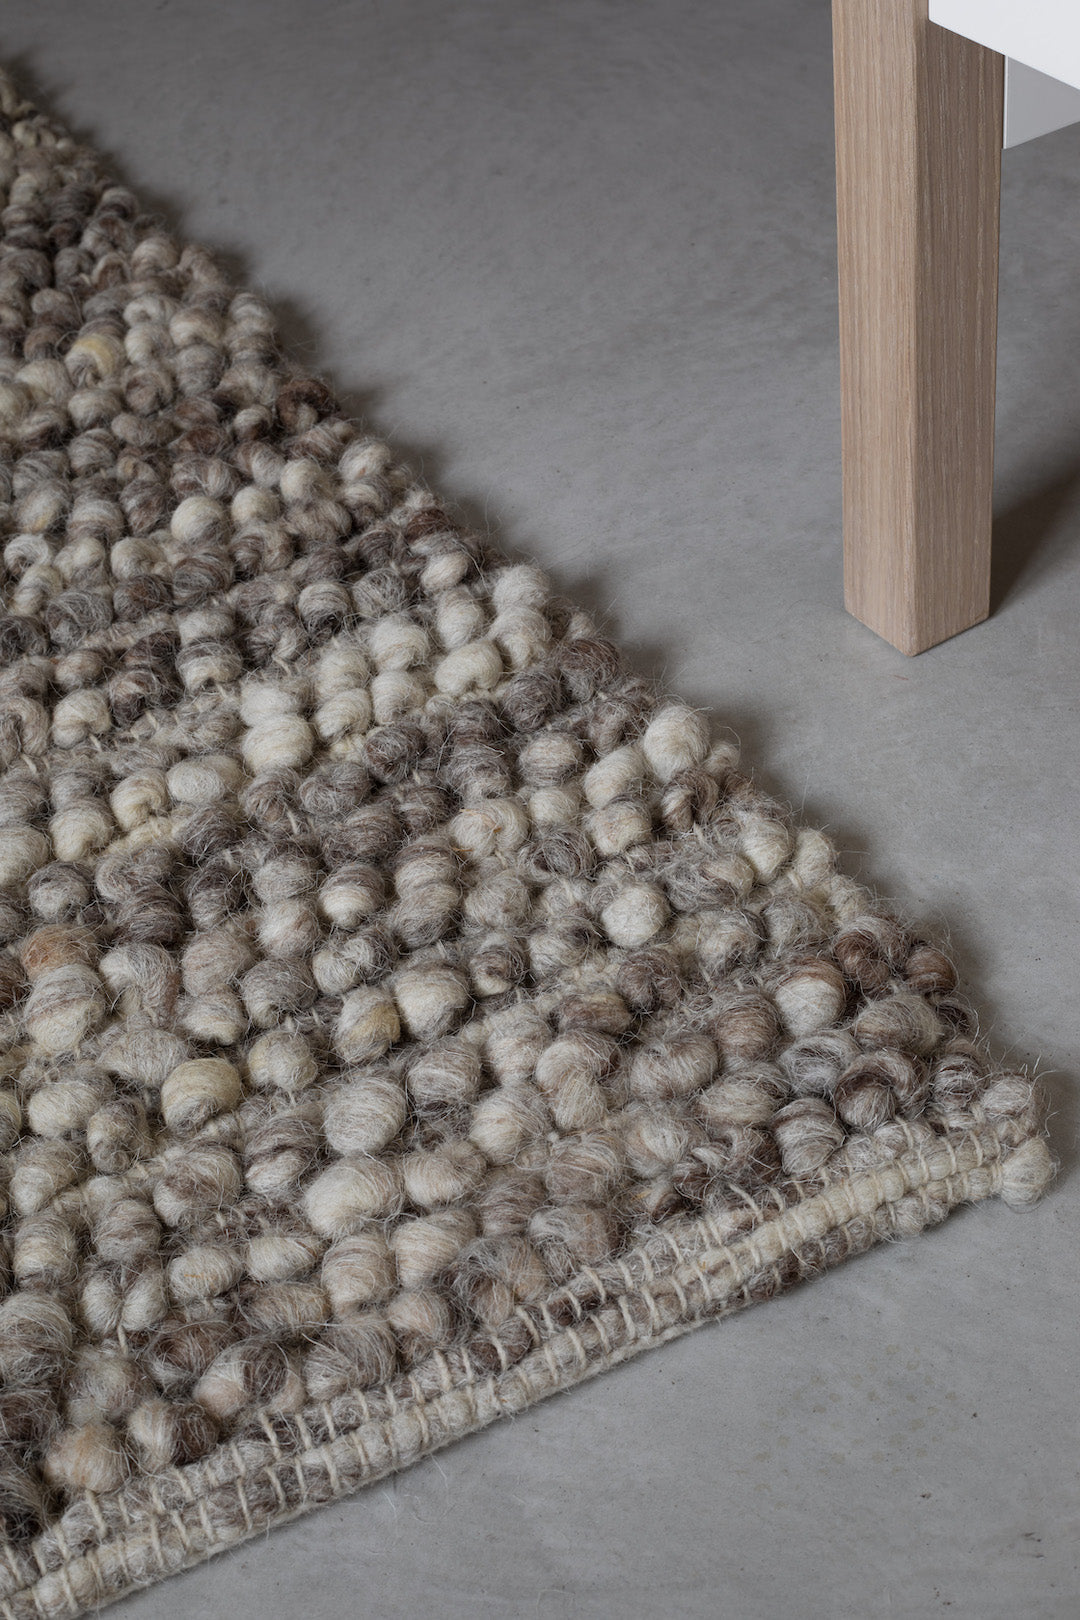 100% natural wool rug - wool blend (heather), loop effect